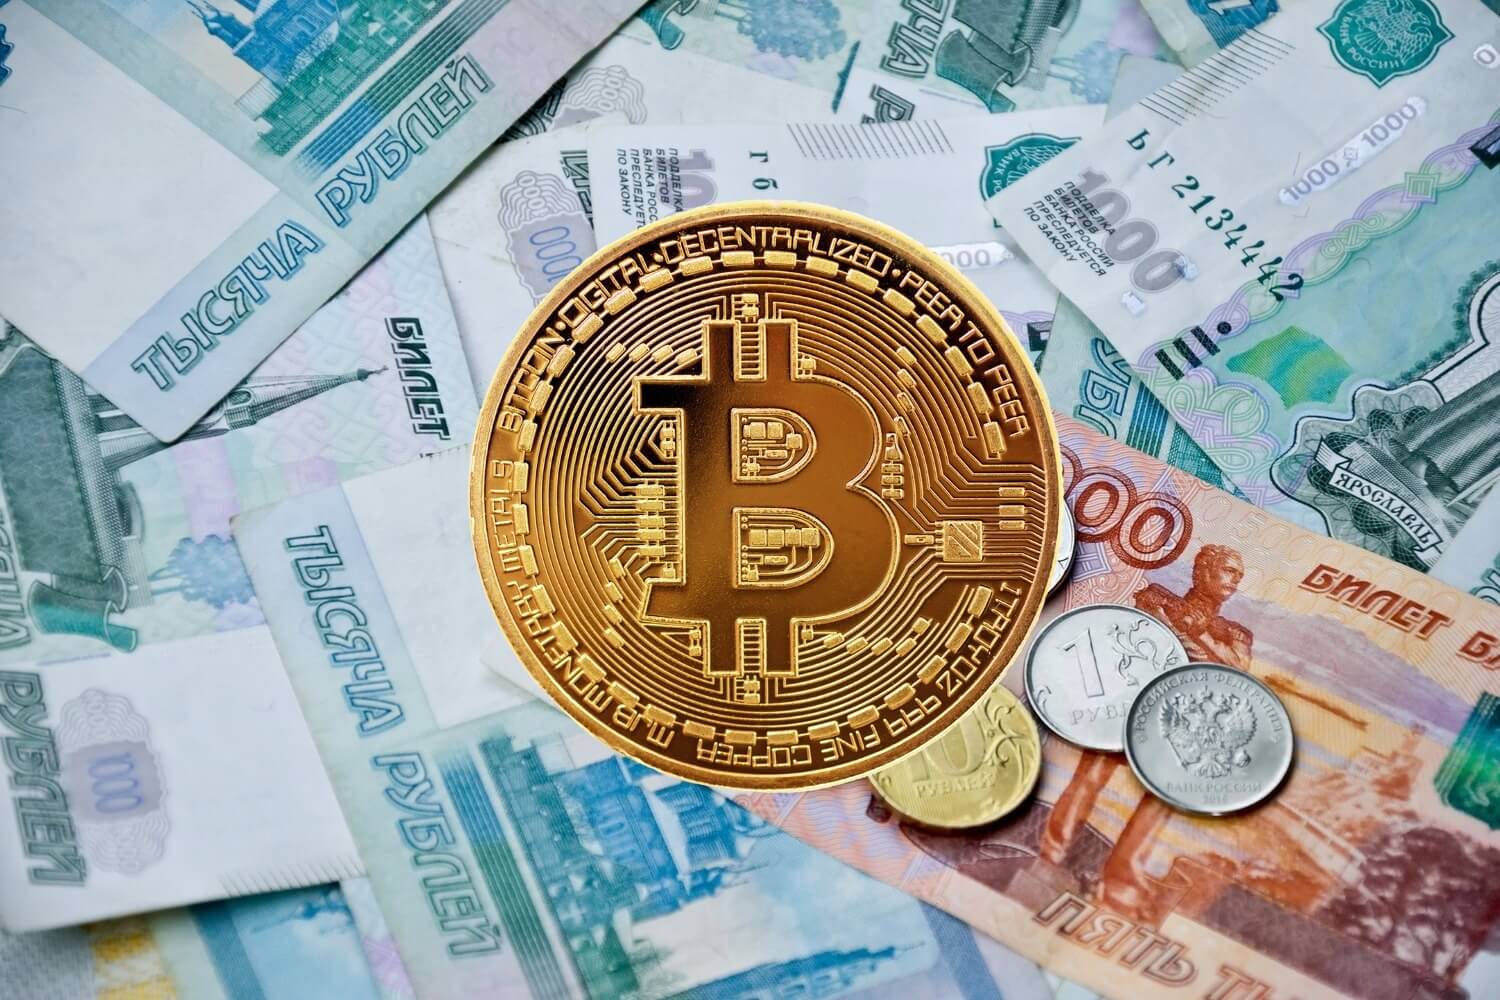 Цена 1000 биткоинов в рублях комиссия биткоина за транзакцию онлайн